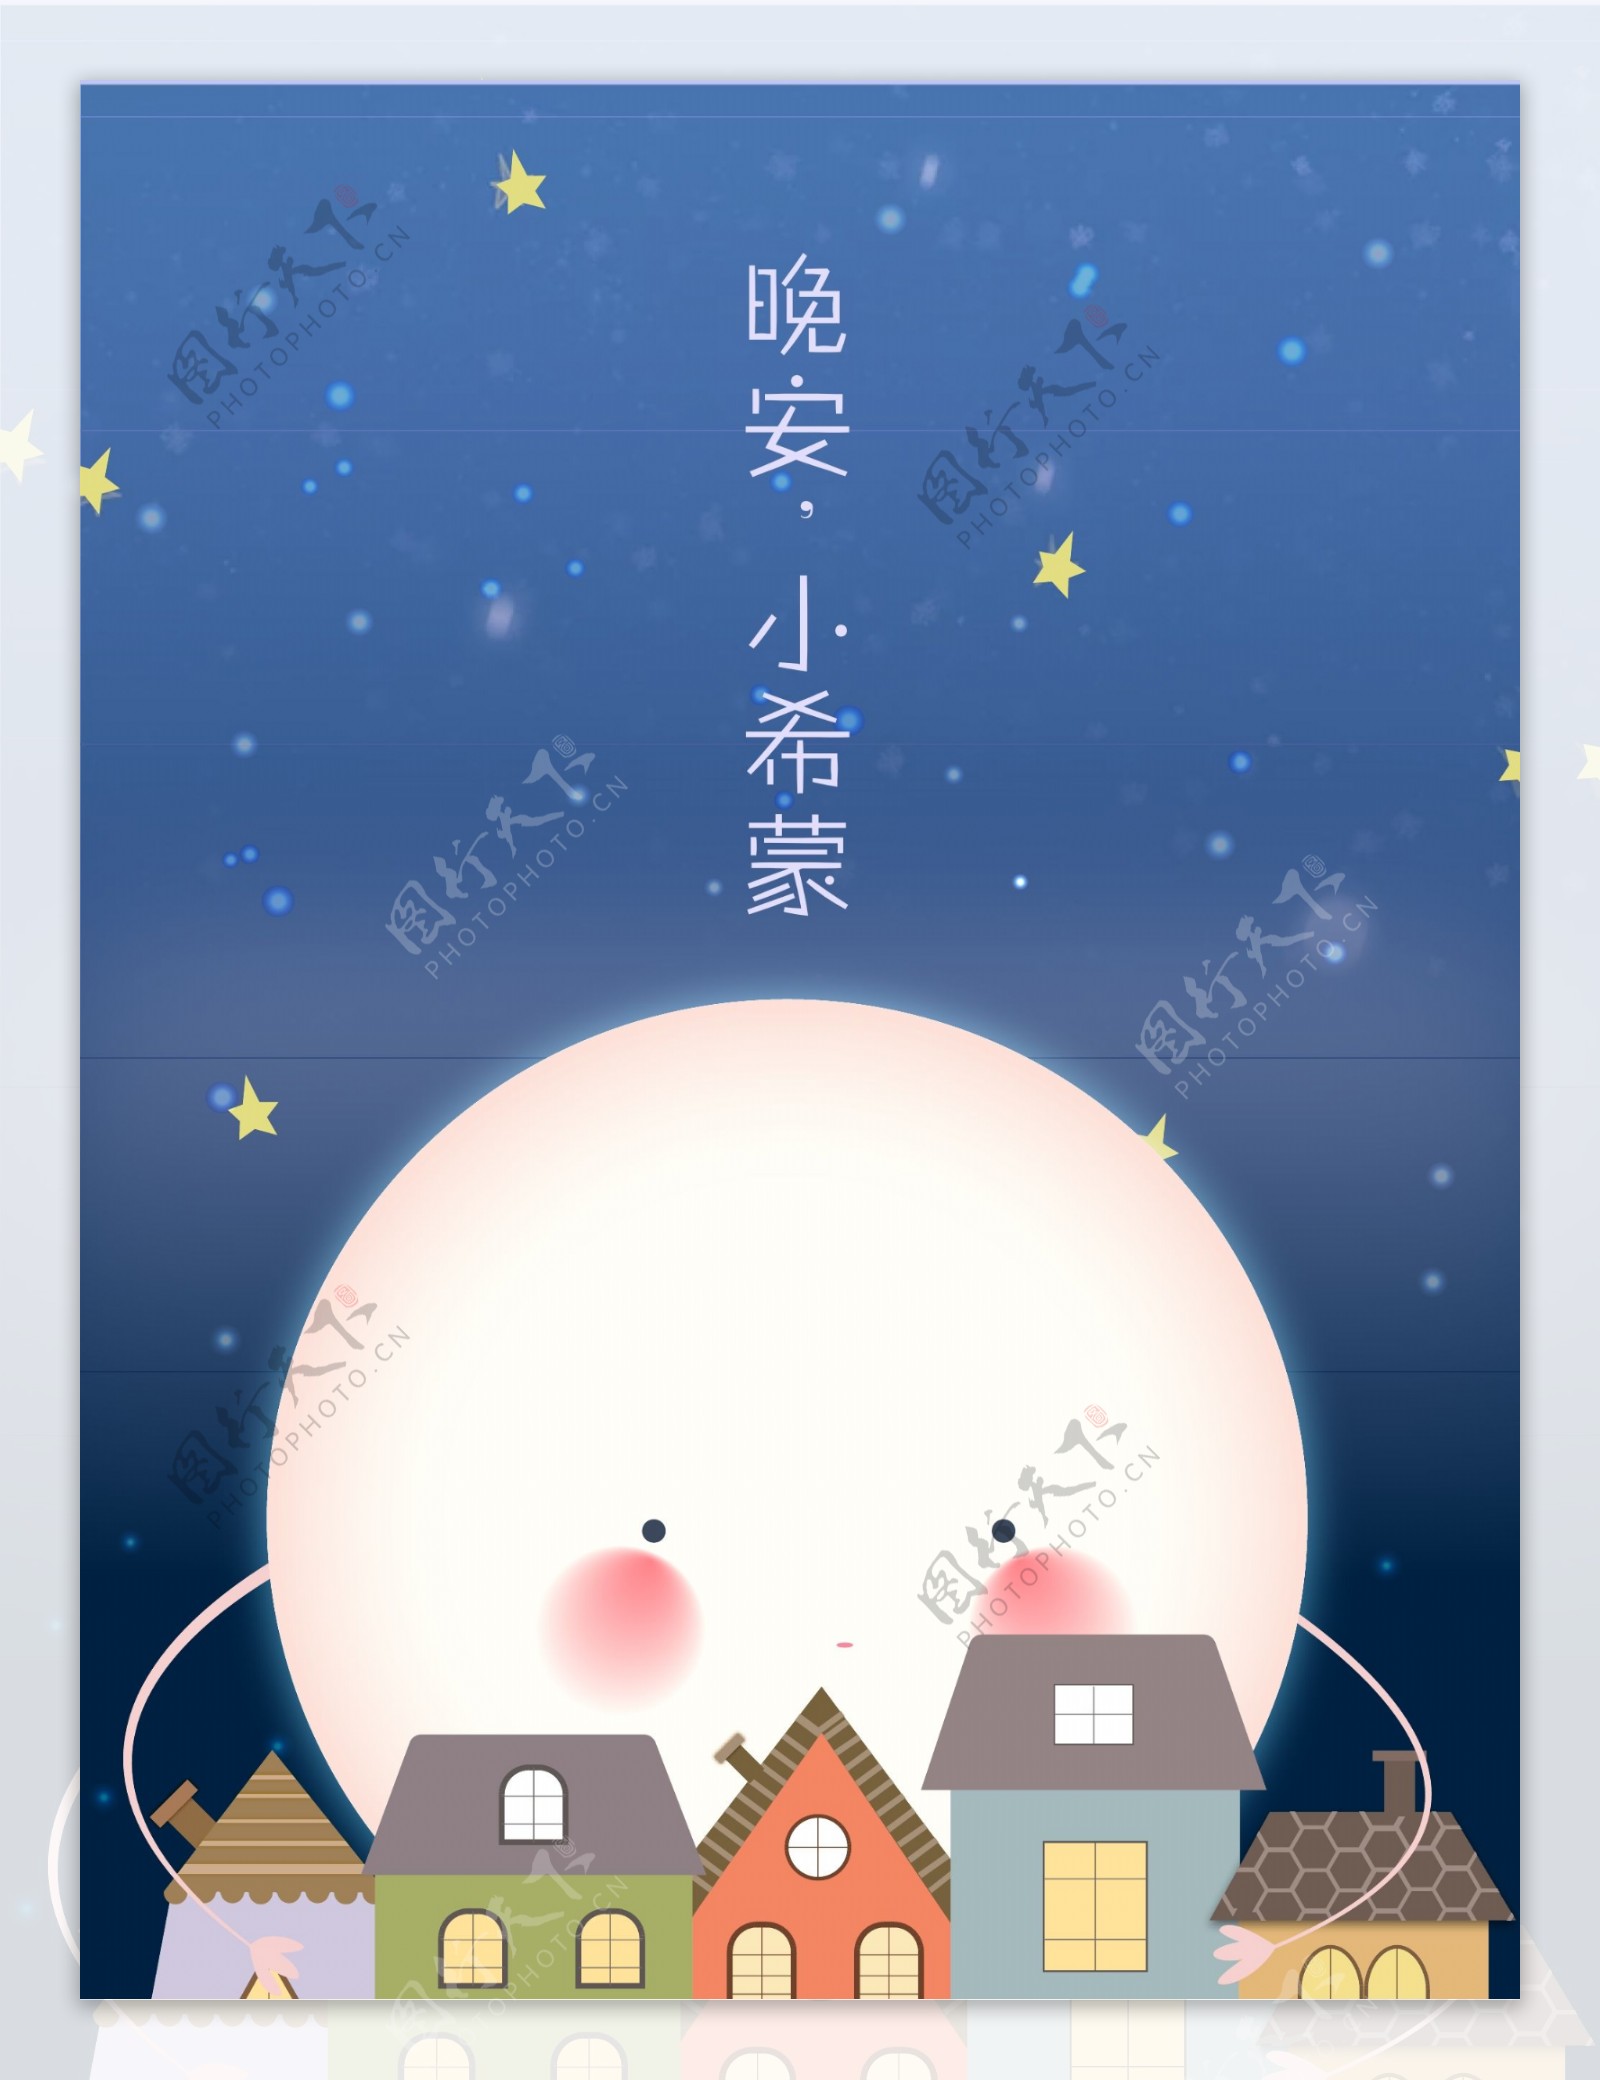 晚安小西蒙系列月亮上的小房子AI儿童插画